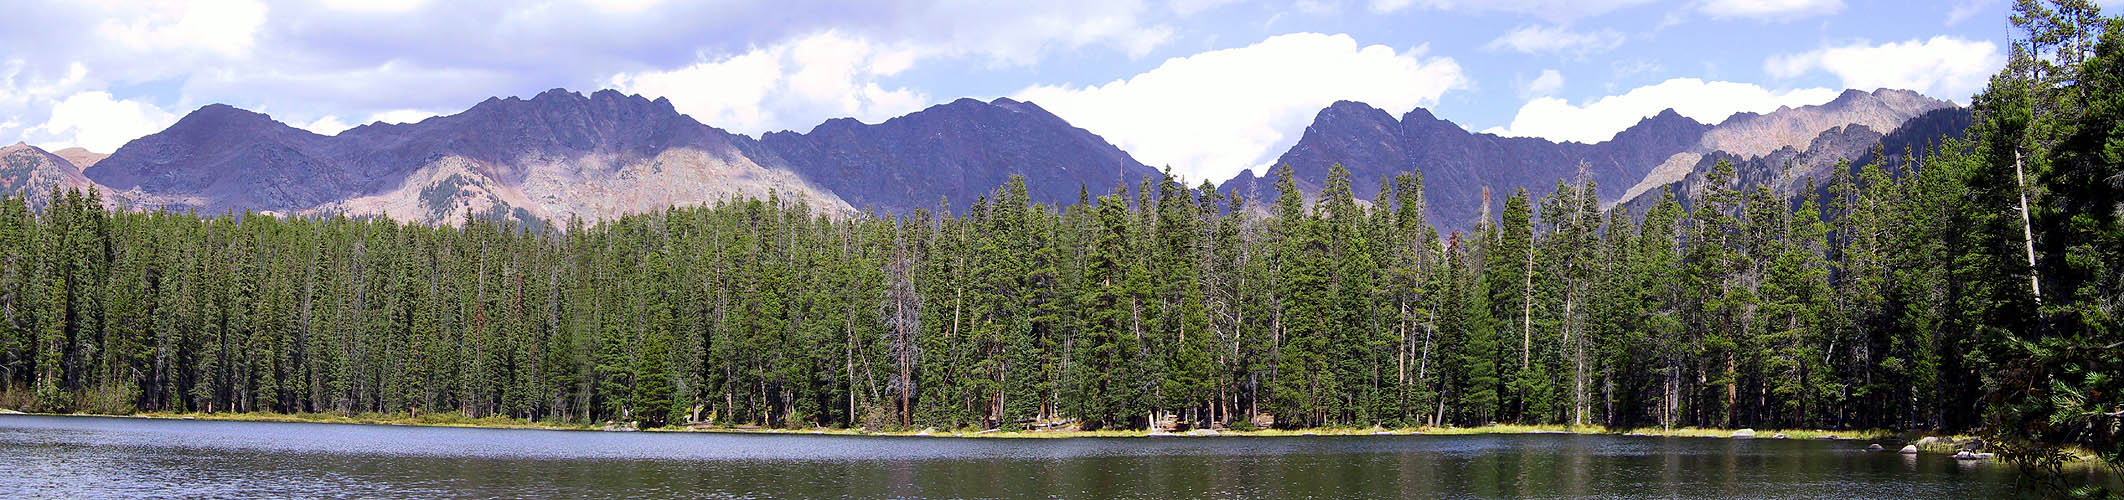 Vail 2001: Lost Lake Panoramic